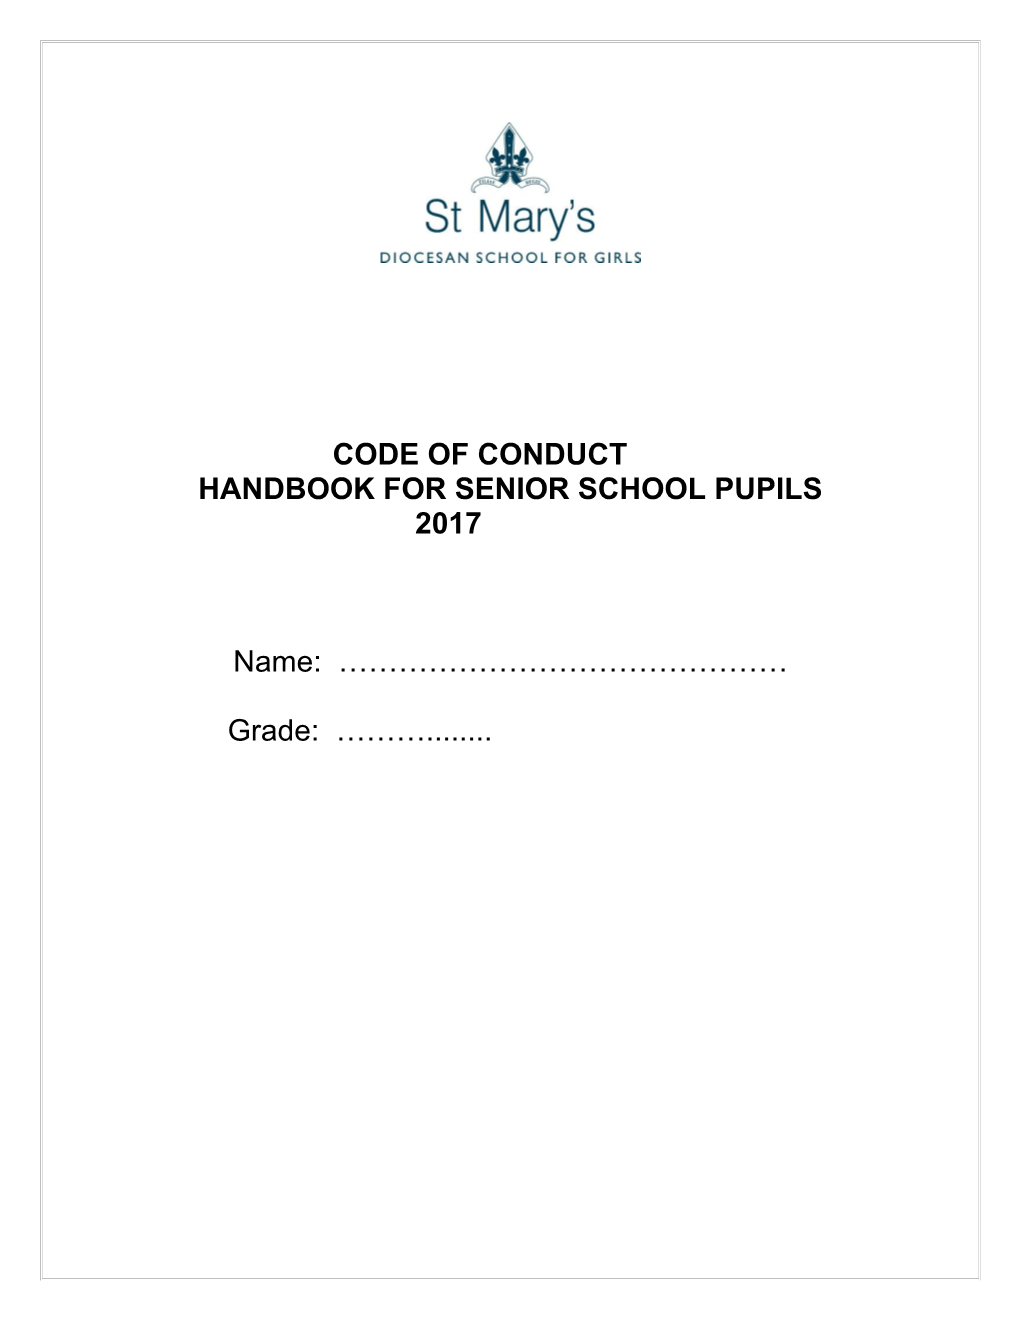 Handbook for Senior School Pupils